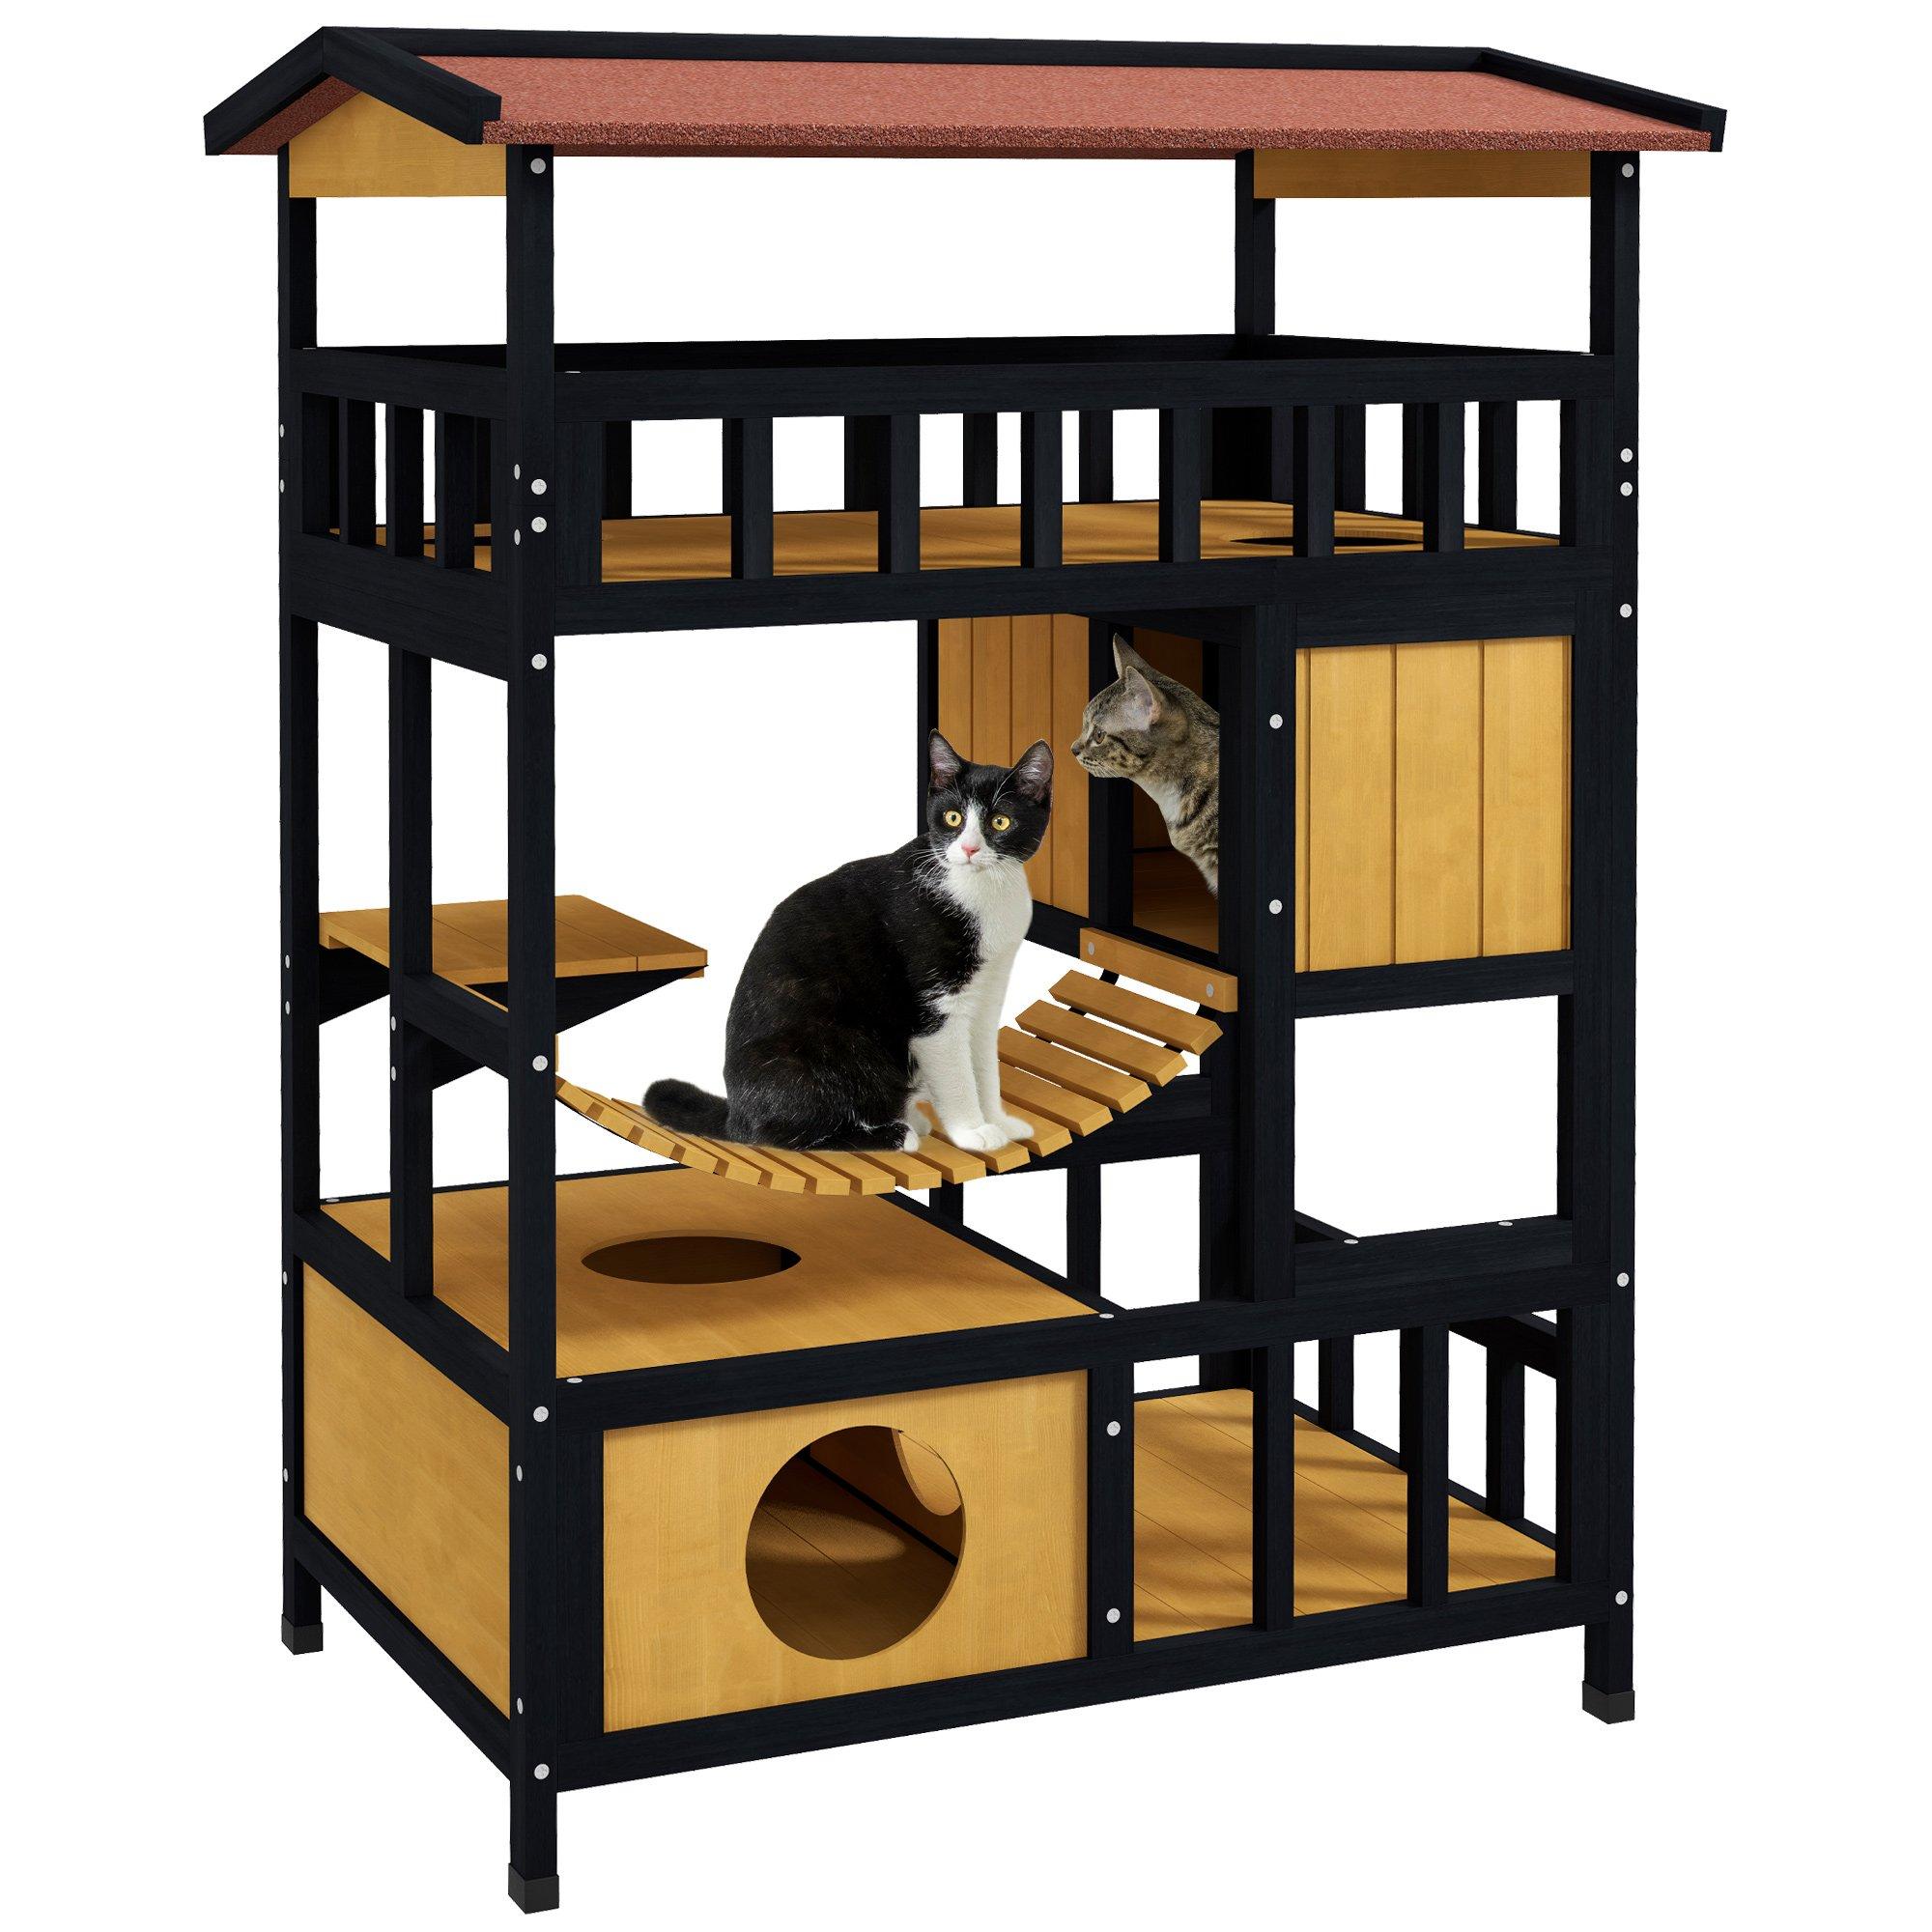 4 Tiers Outdoor Cat House, Wooden Cat Shelter w/ Suspension Bridge, Corridors